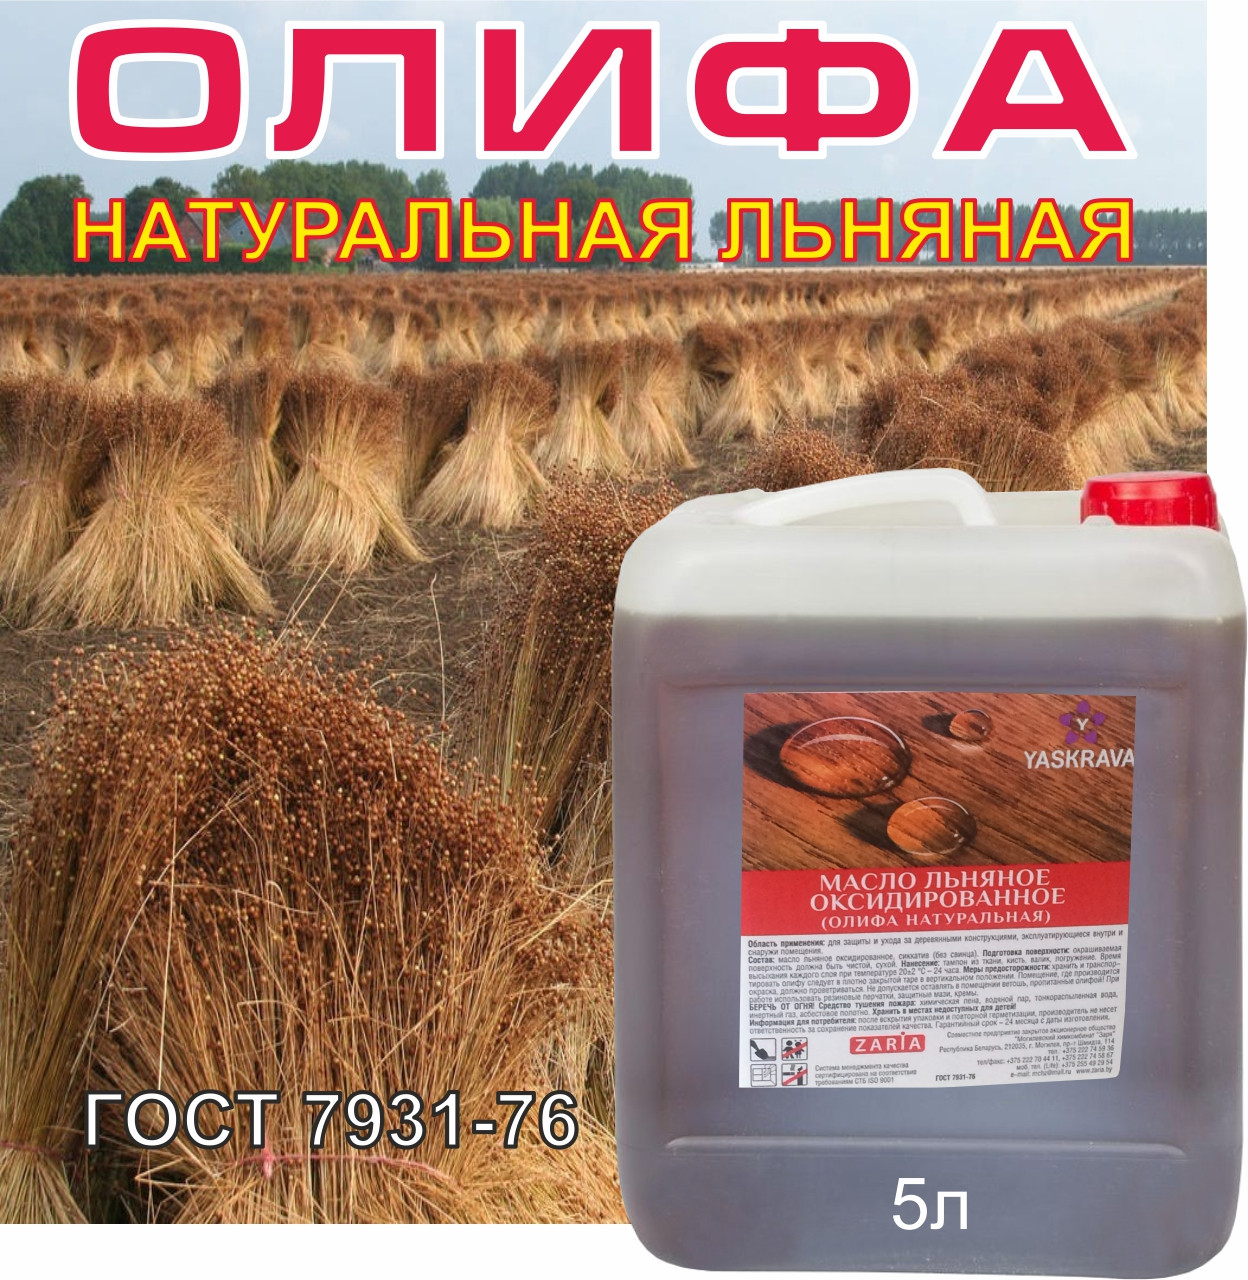 Олифа натуральная льняная ГОСТ 5л/4,5кг (цена с НДС), фото 1